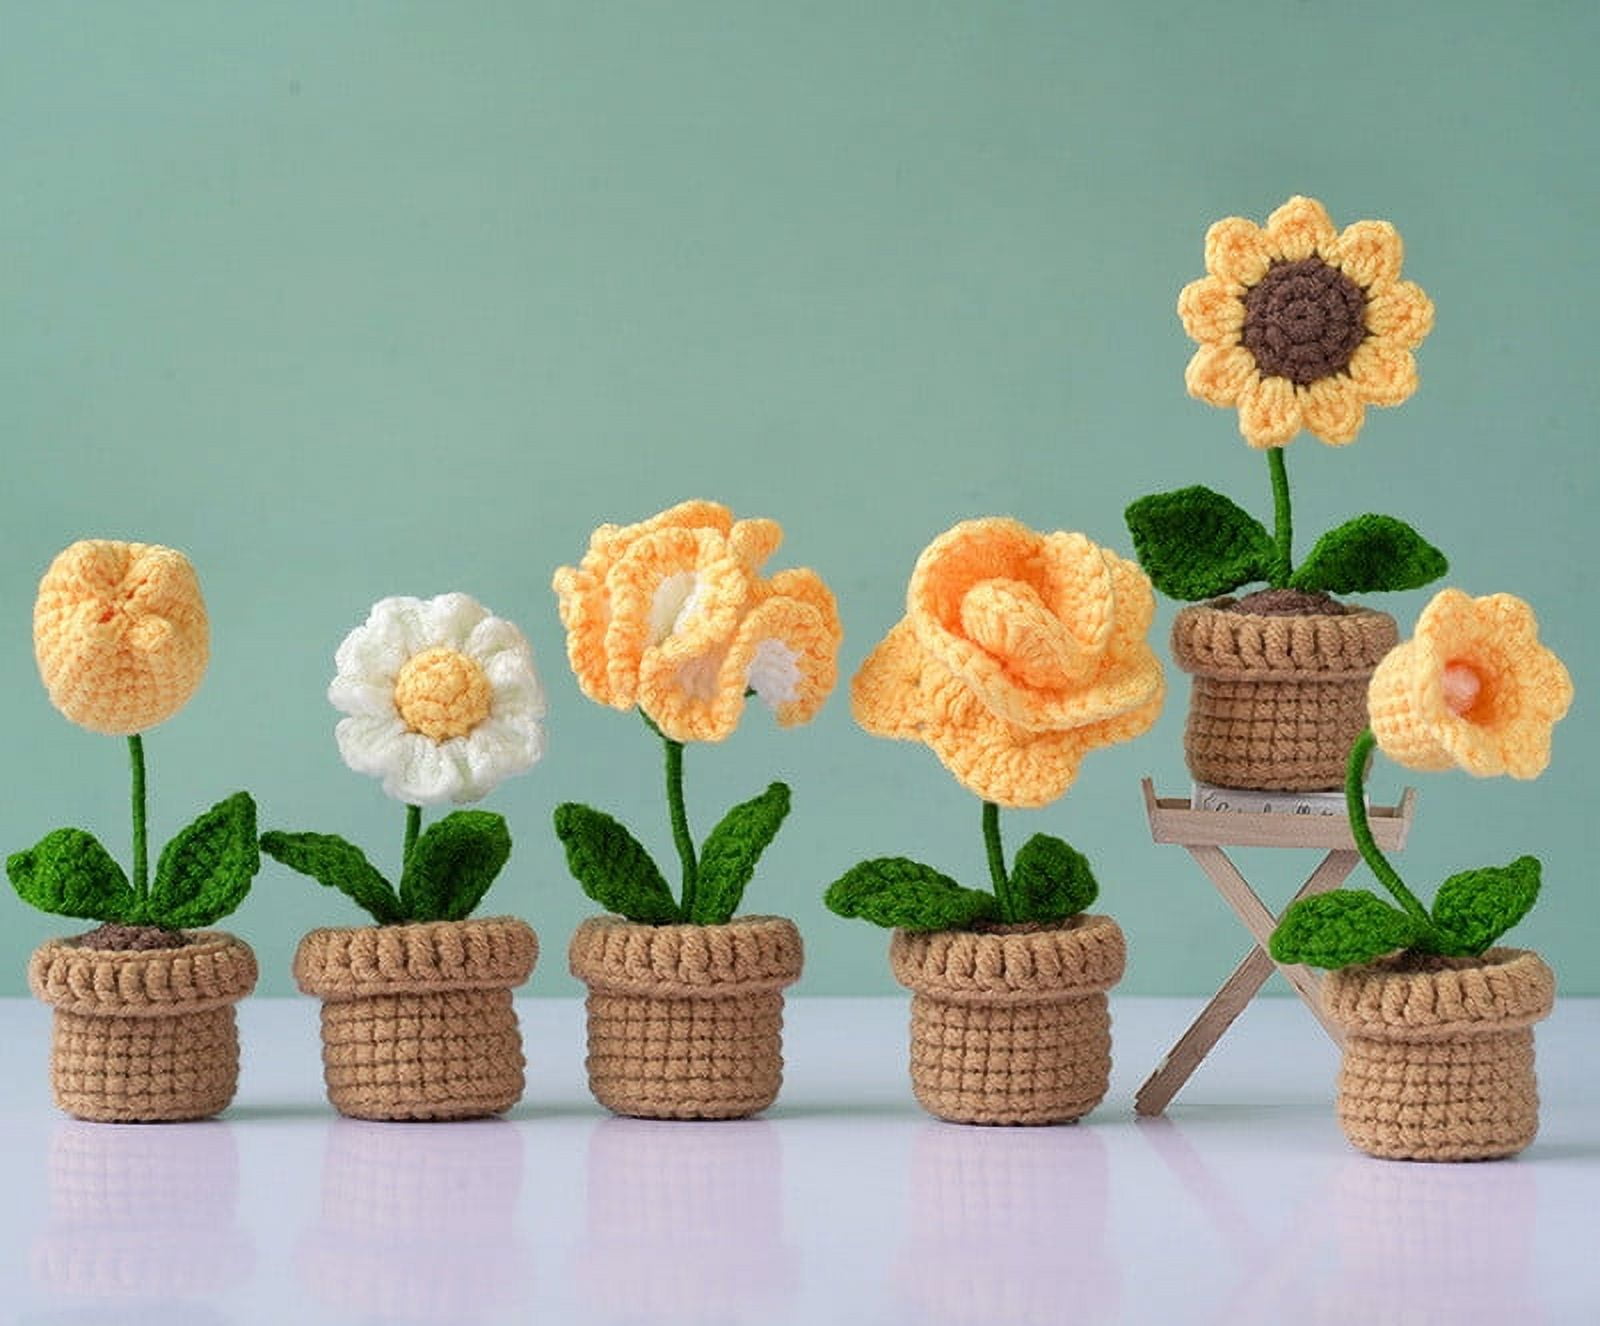 DoreenBow Beginner Crochet Kit 3Pcs Flower Crochet DIY Kit for Adults and  Kid